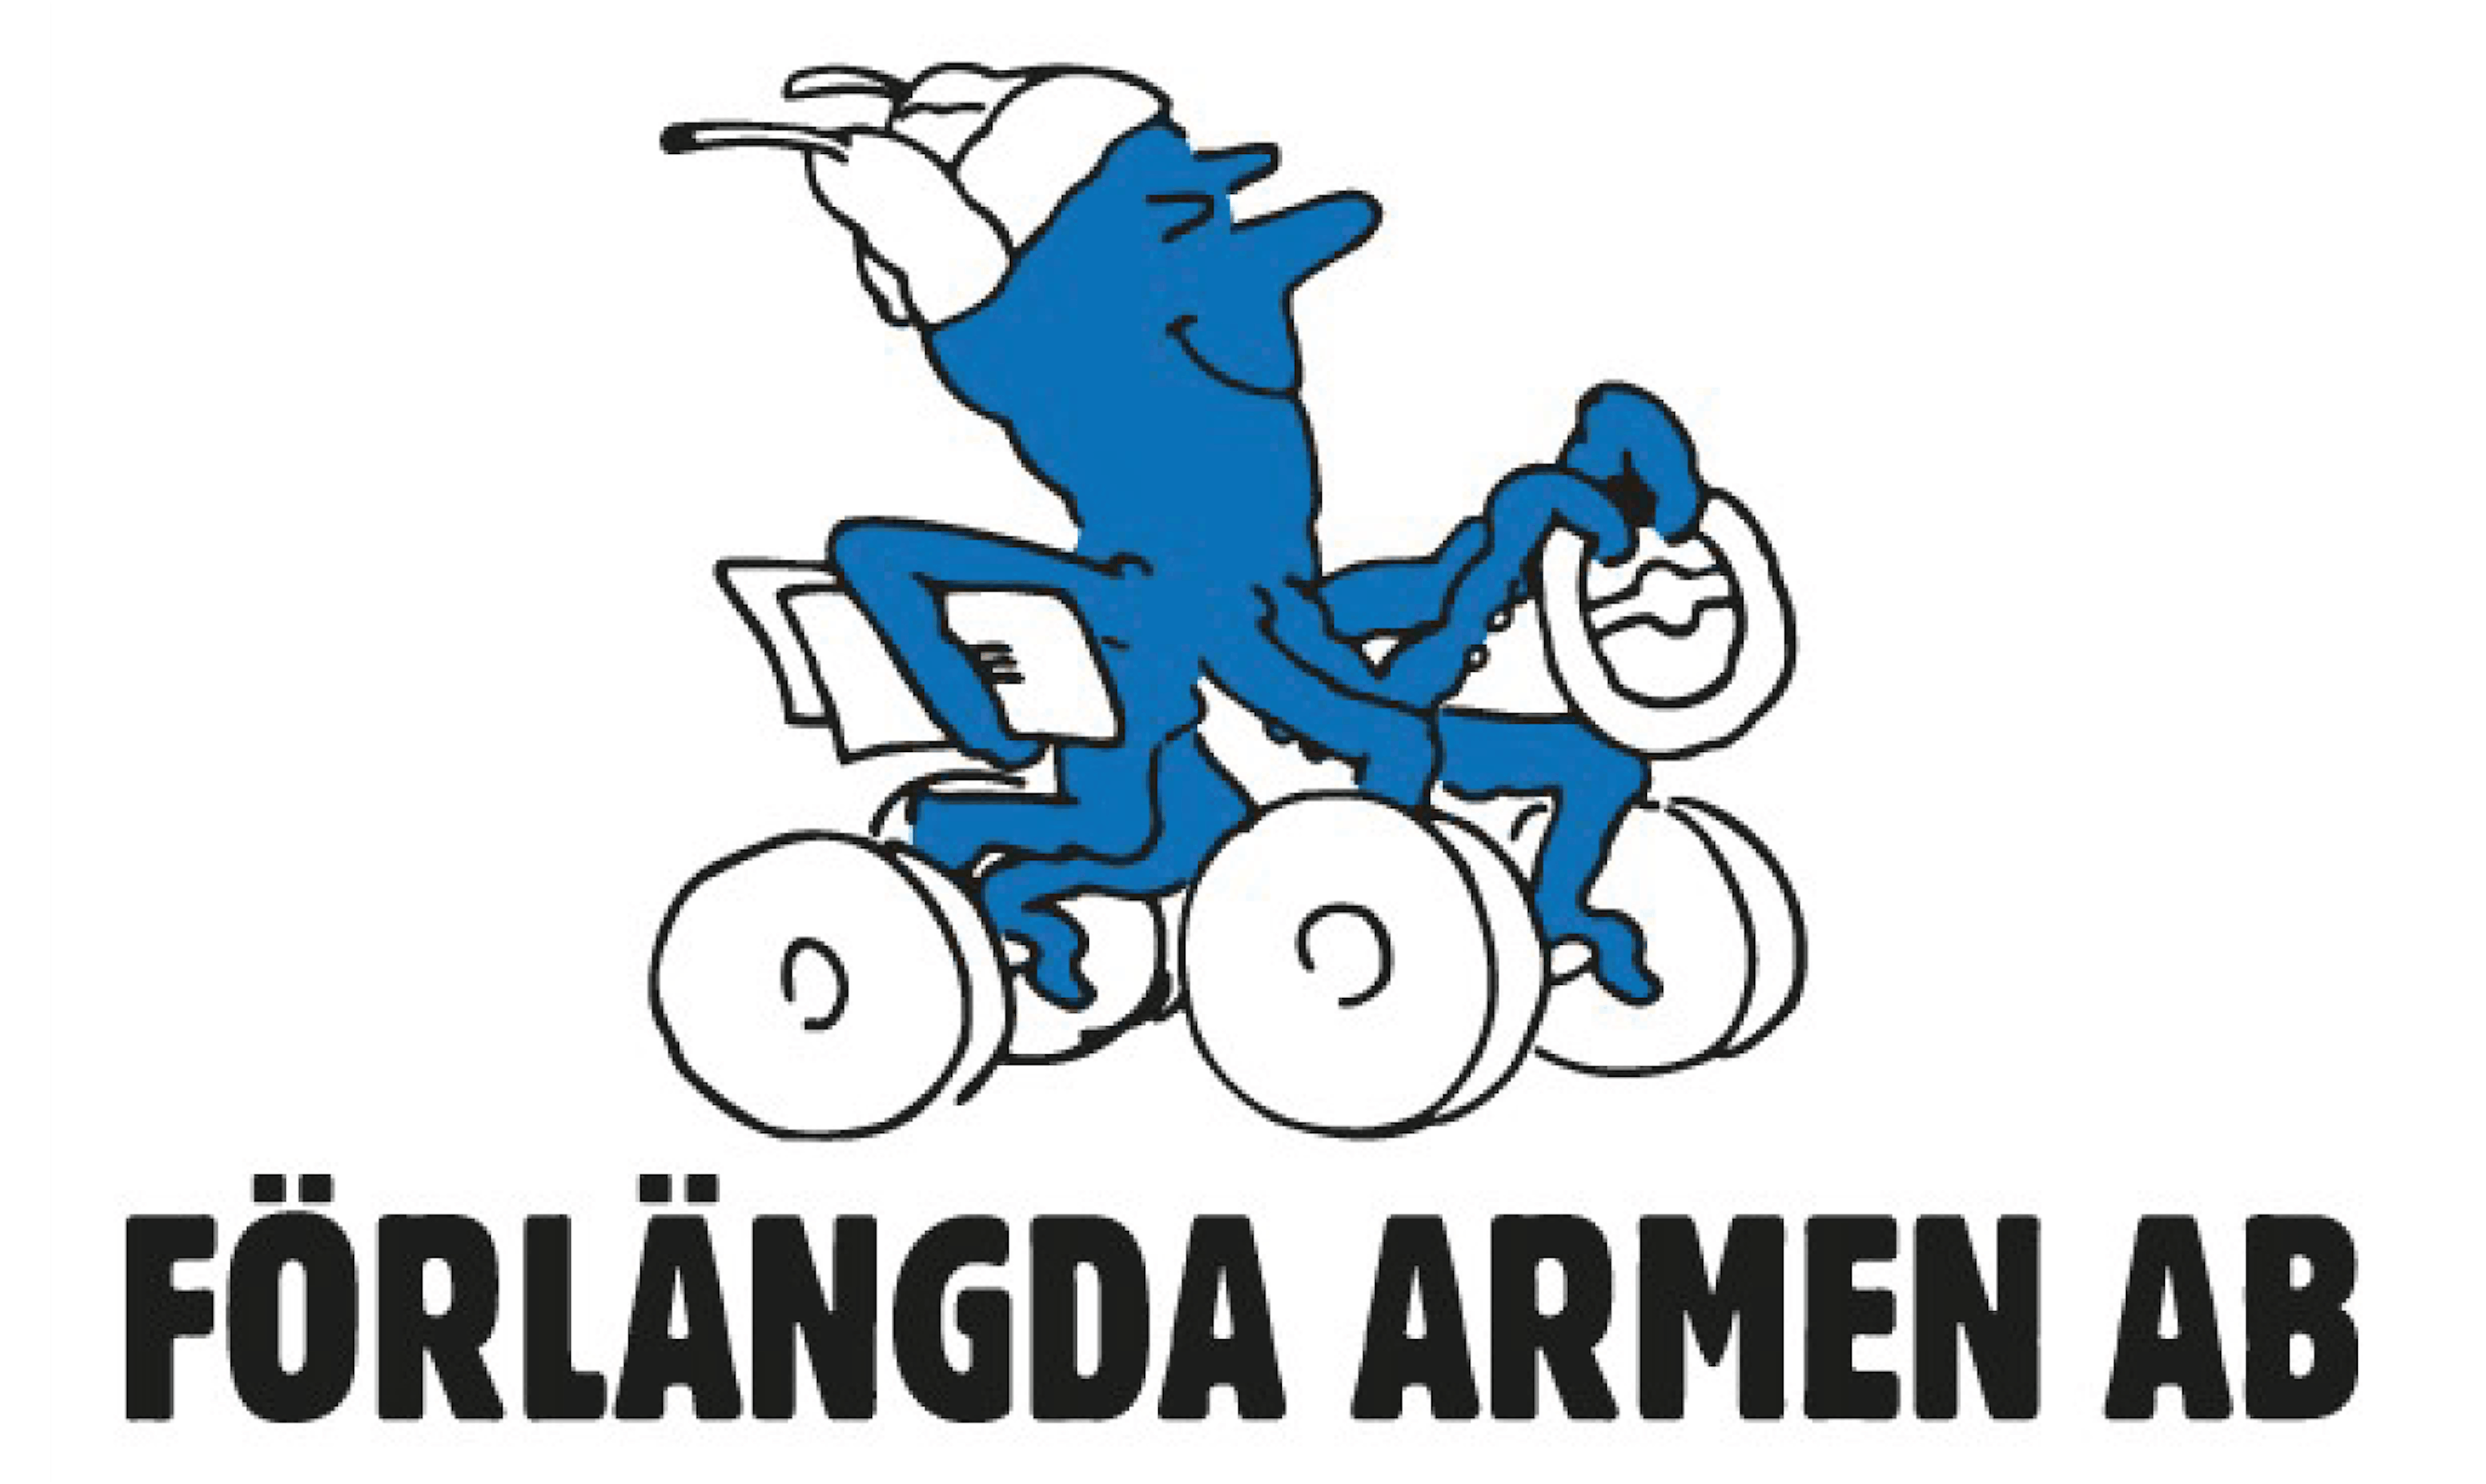 Förlängda Armen AB, logo